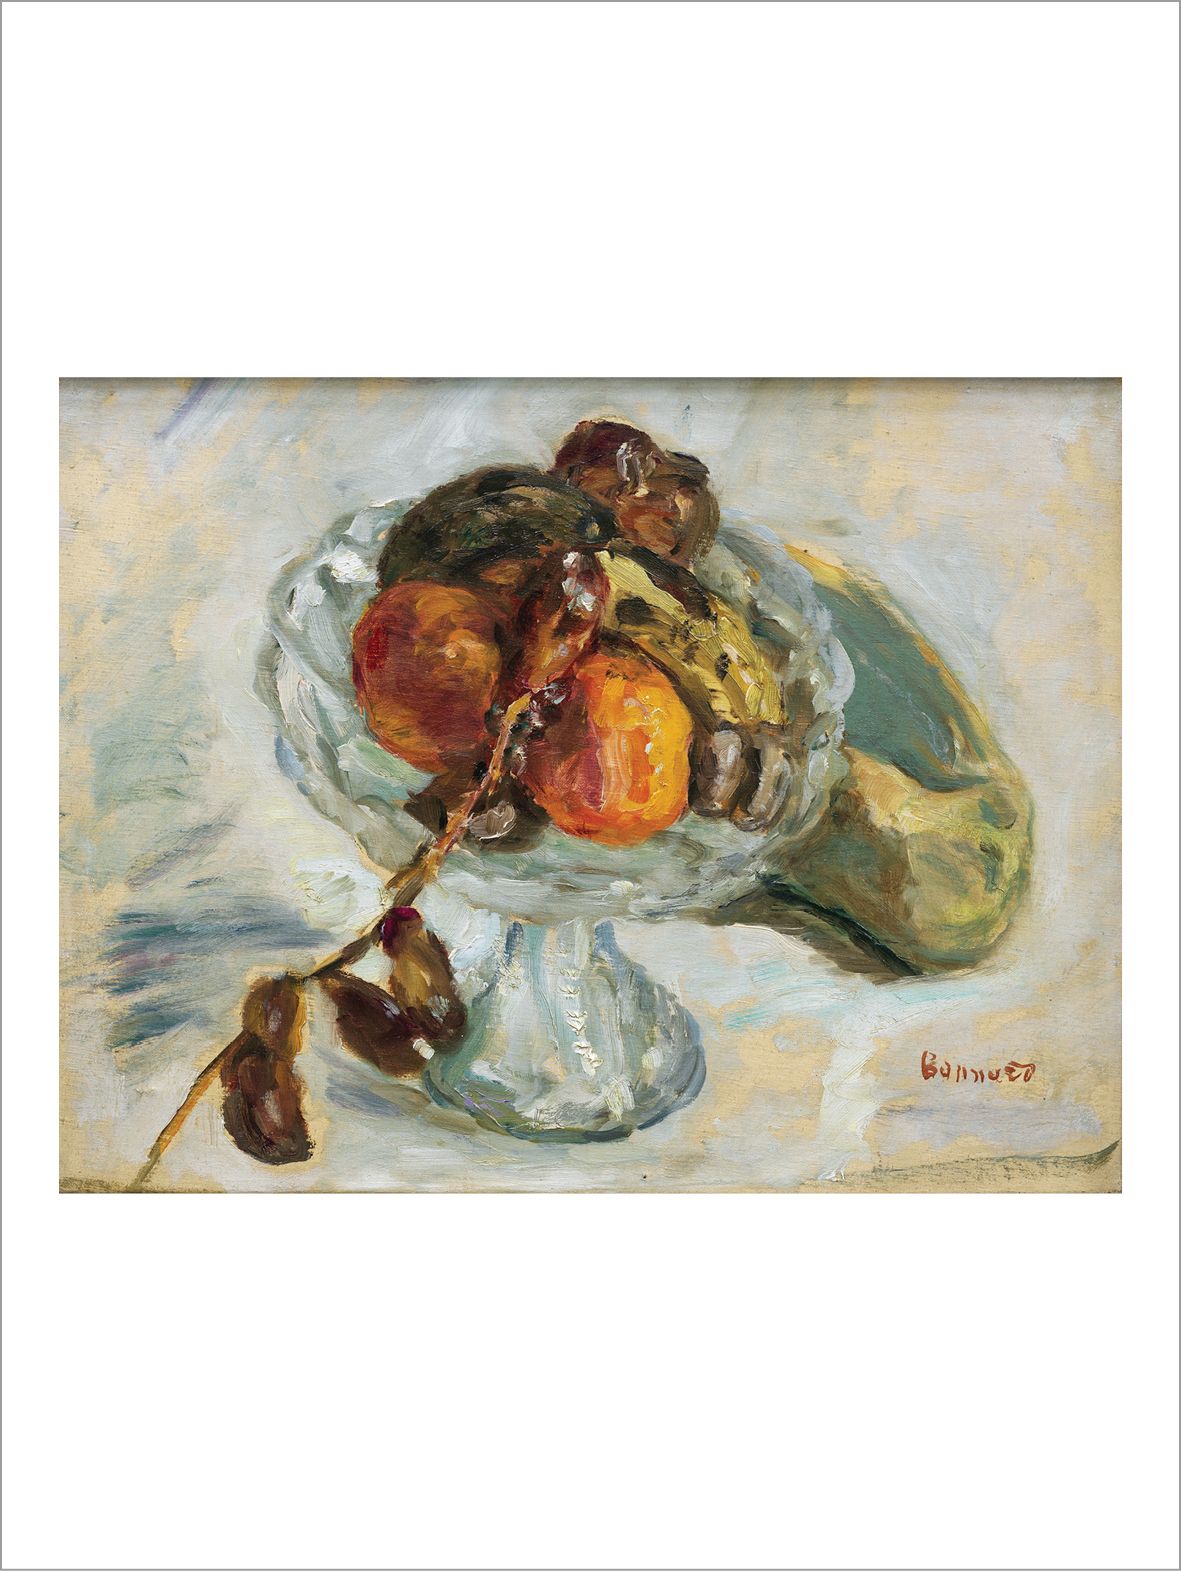 Pierre BONNARD (1867-1947) 
Le régime de dattes, 1912
布面油画。
右下方签名。
布面油画。
右下方签名。
&hellip;